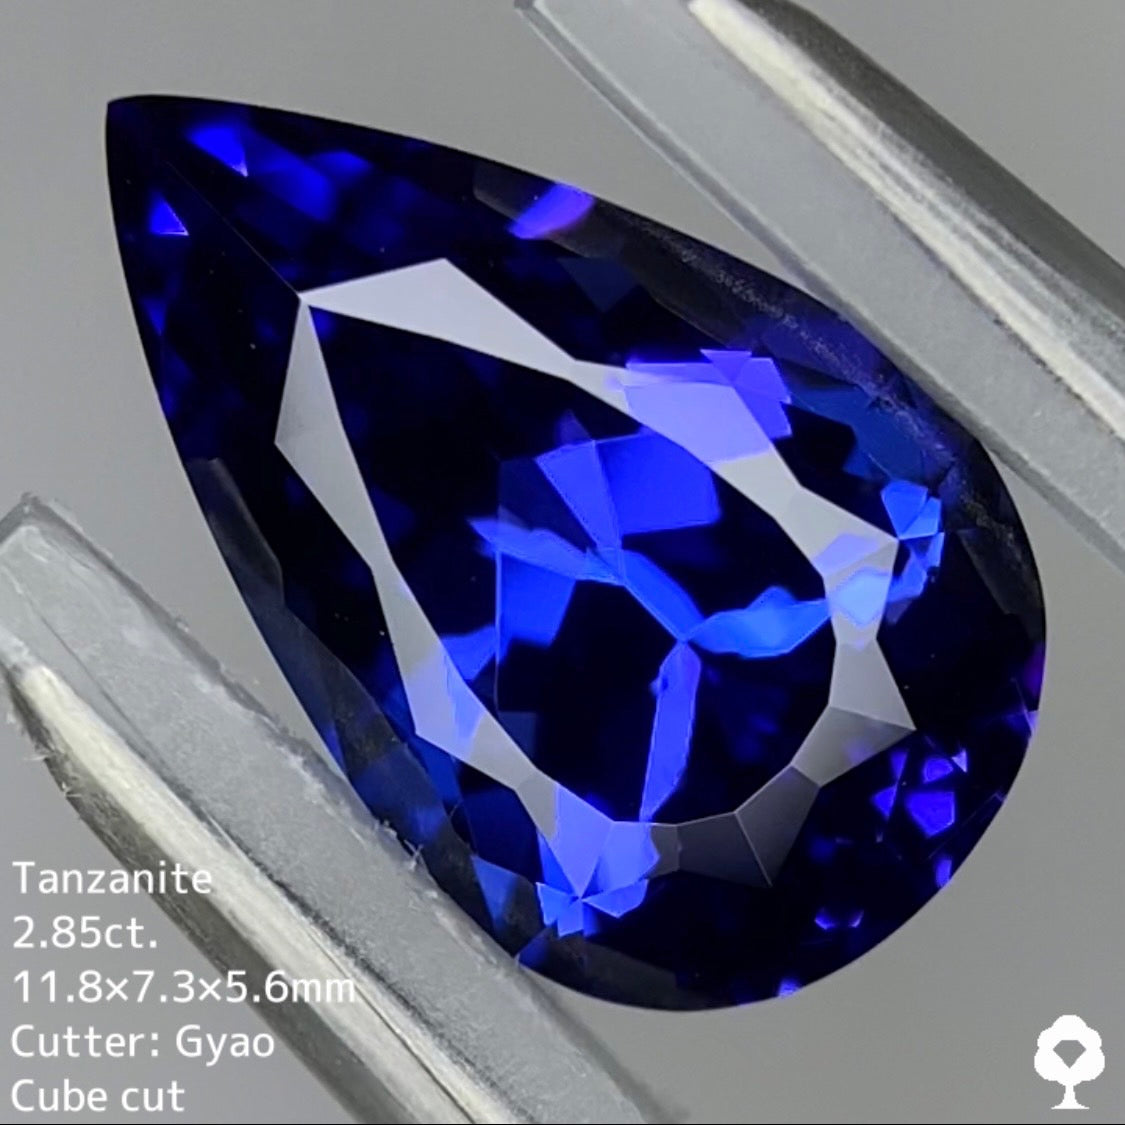 【お客さま専用】青い焔のようなシャープなペアシェイプにタイ記念公開コインカット★タンザナイト 2.863ct 【Cube cut】ゲオちゃん作品